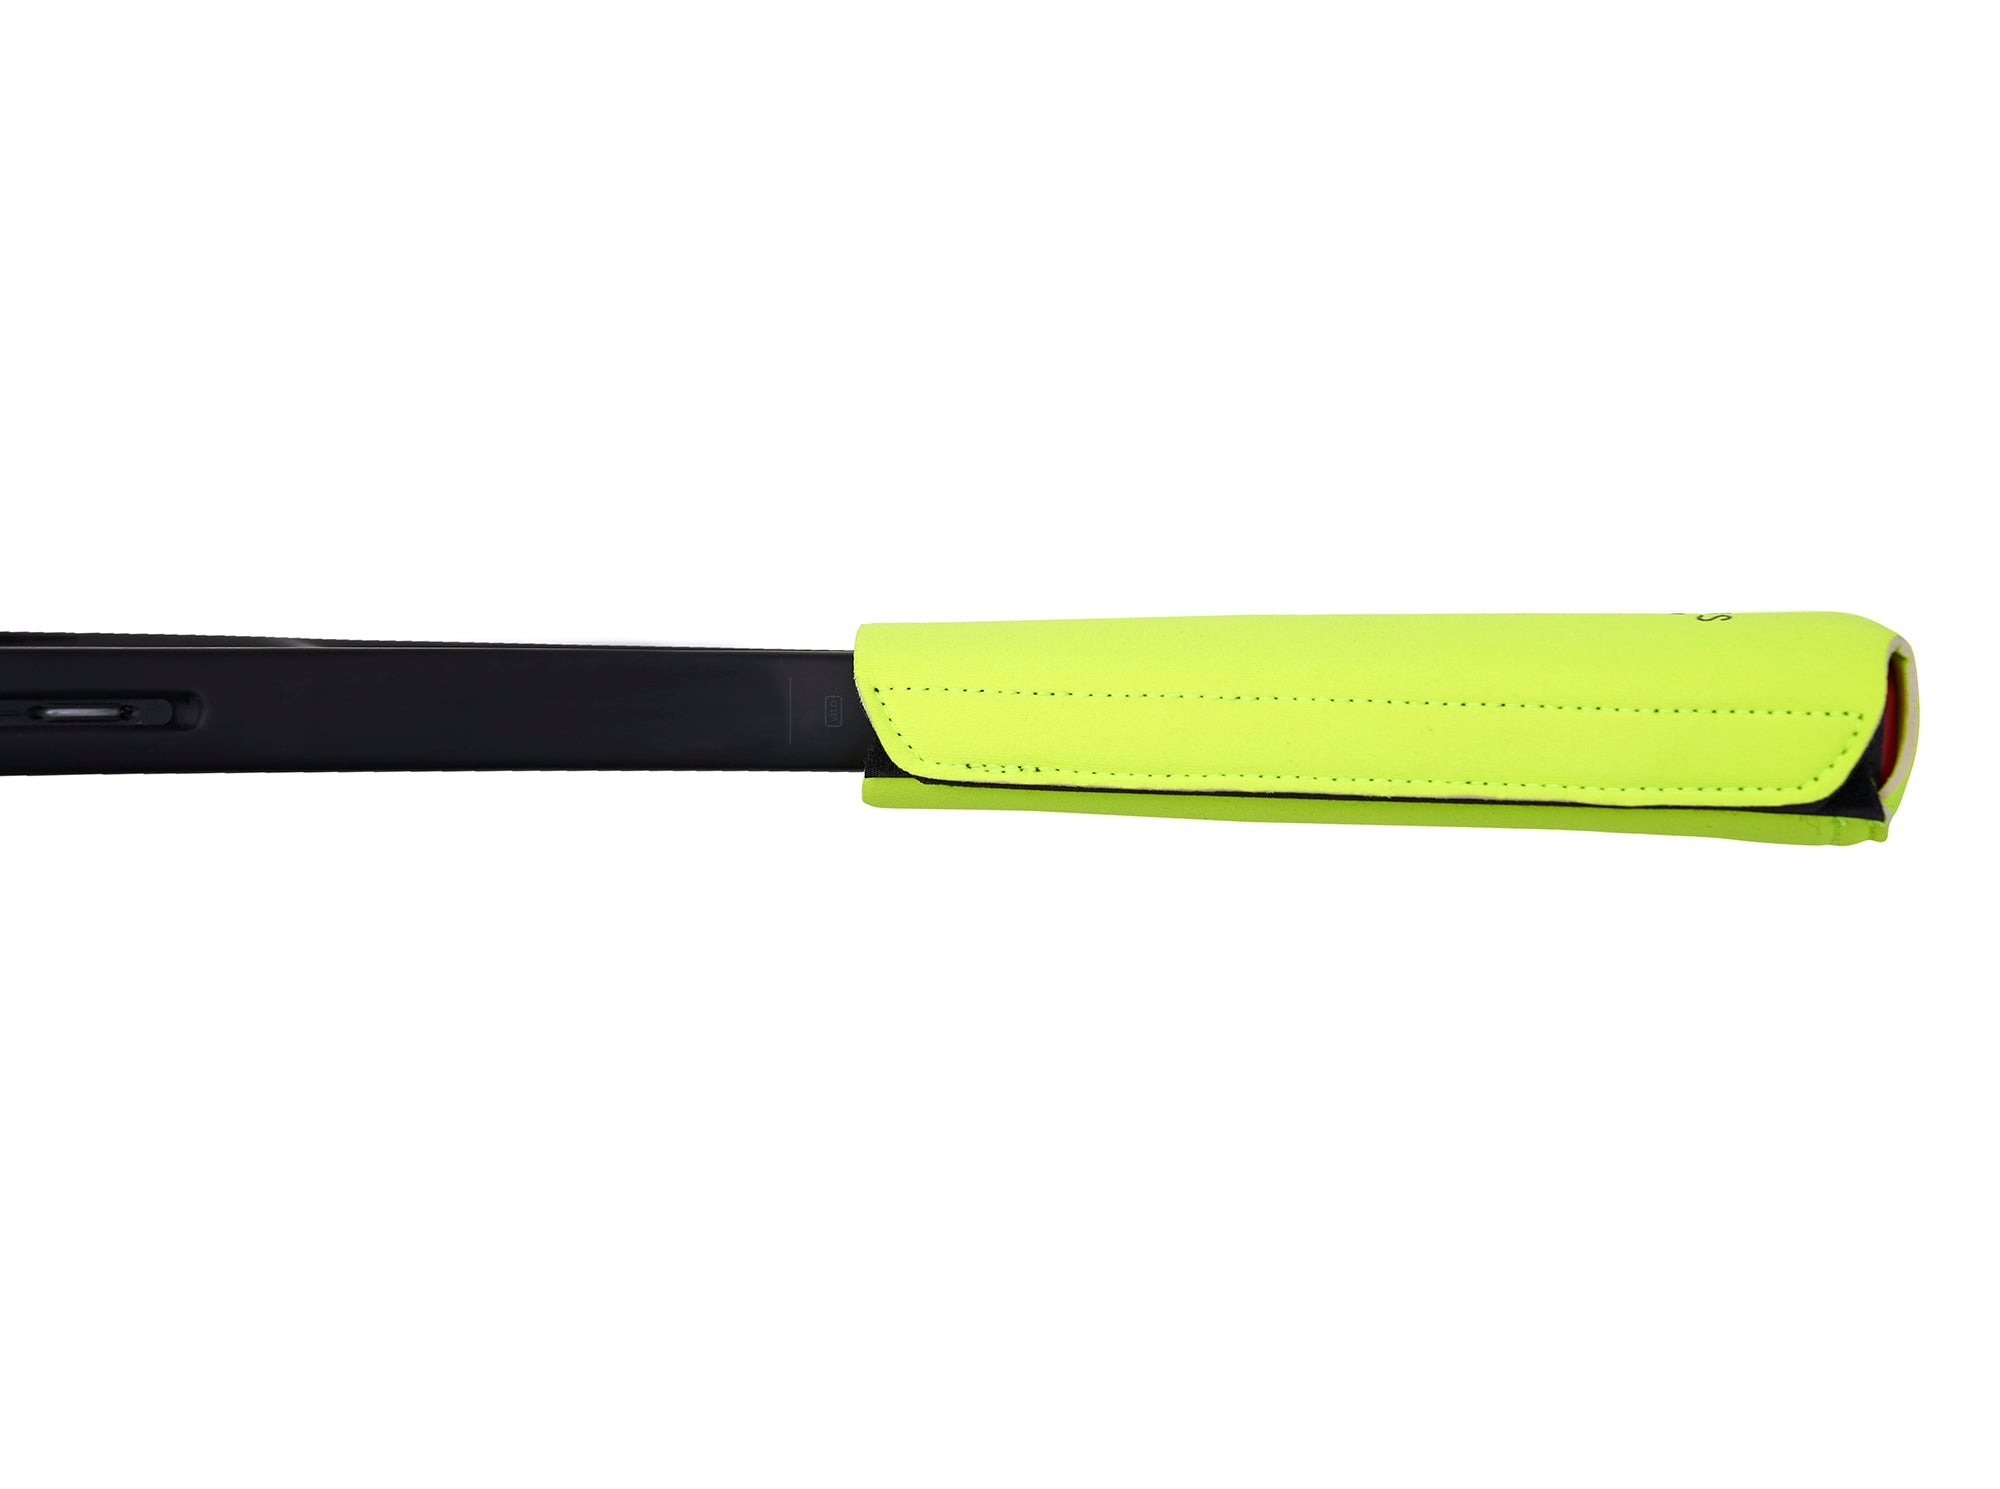 Michael Kors Jet Set Item Neoprene Tennis Racket Cover in Green